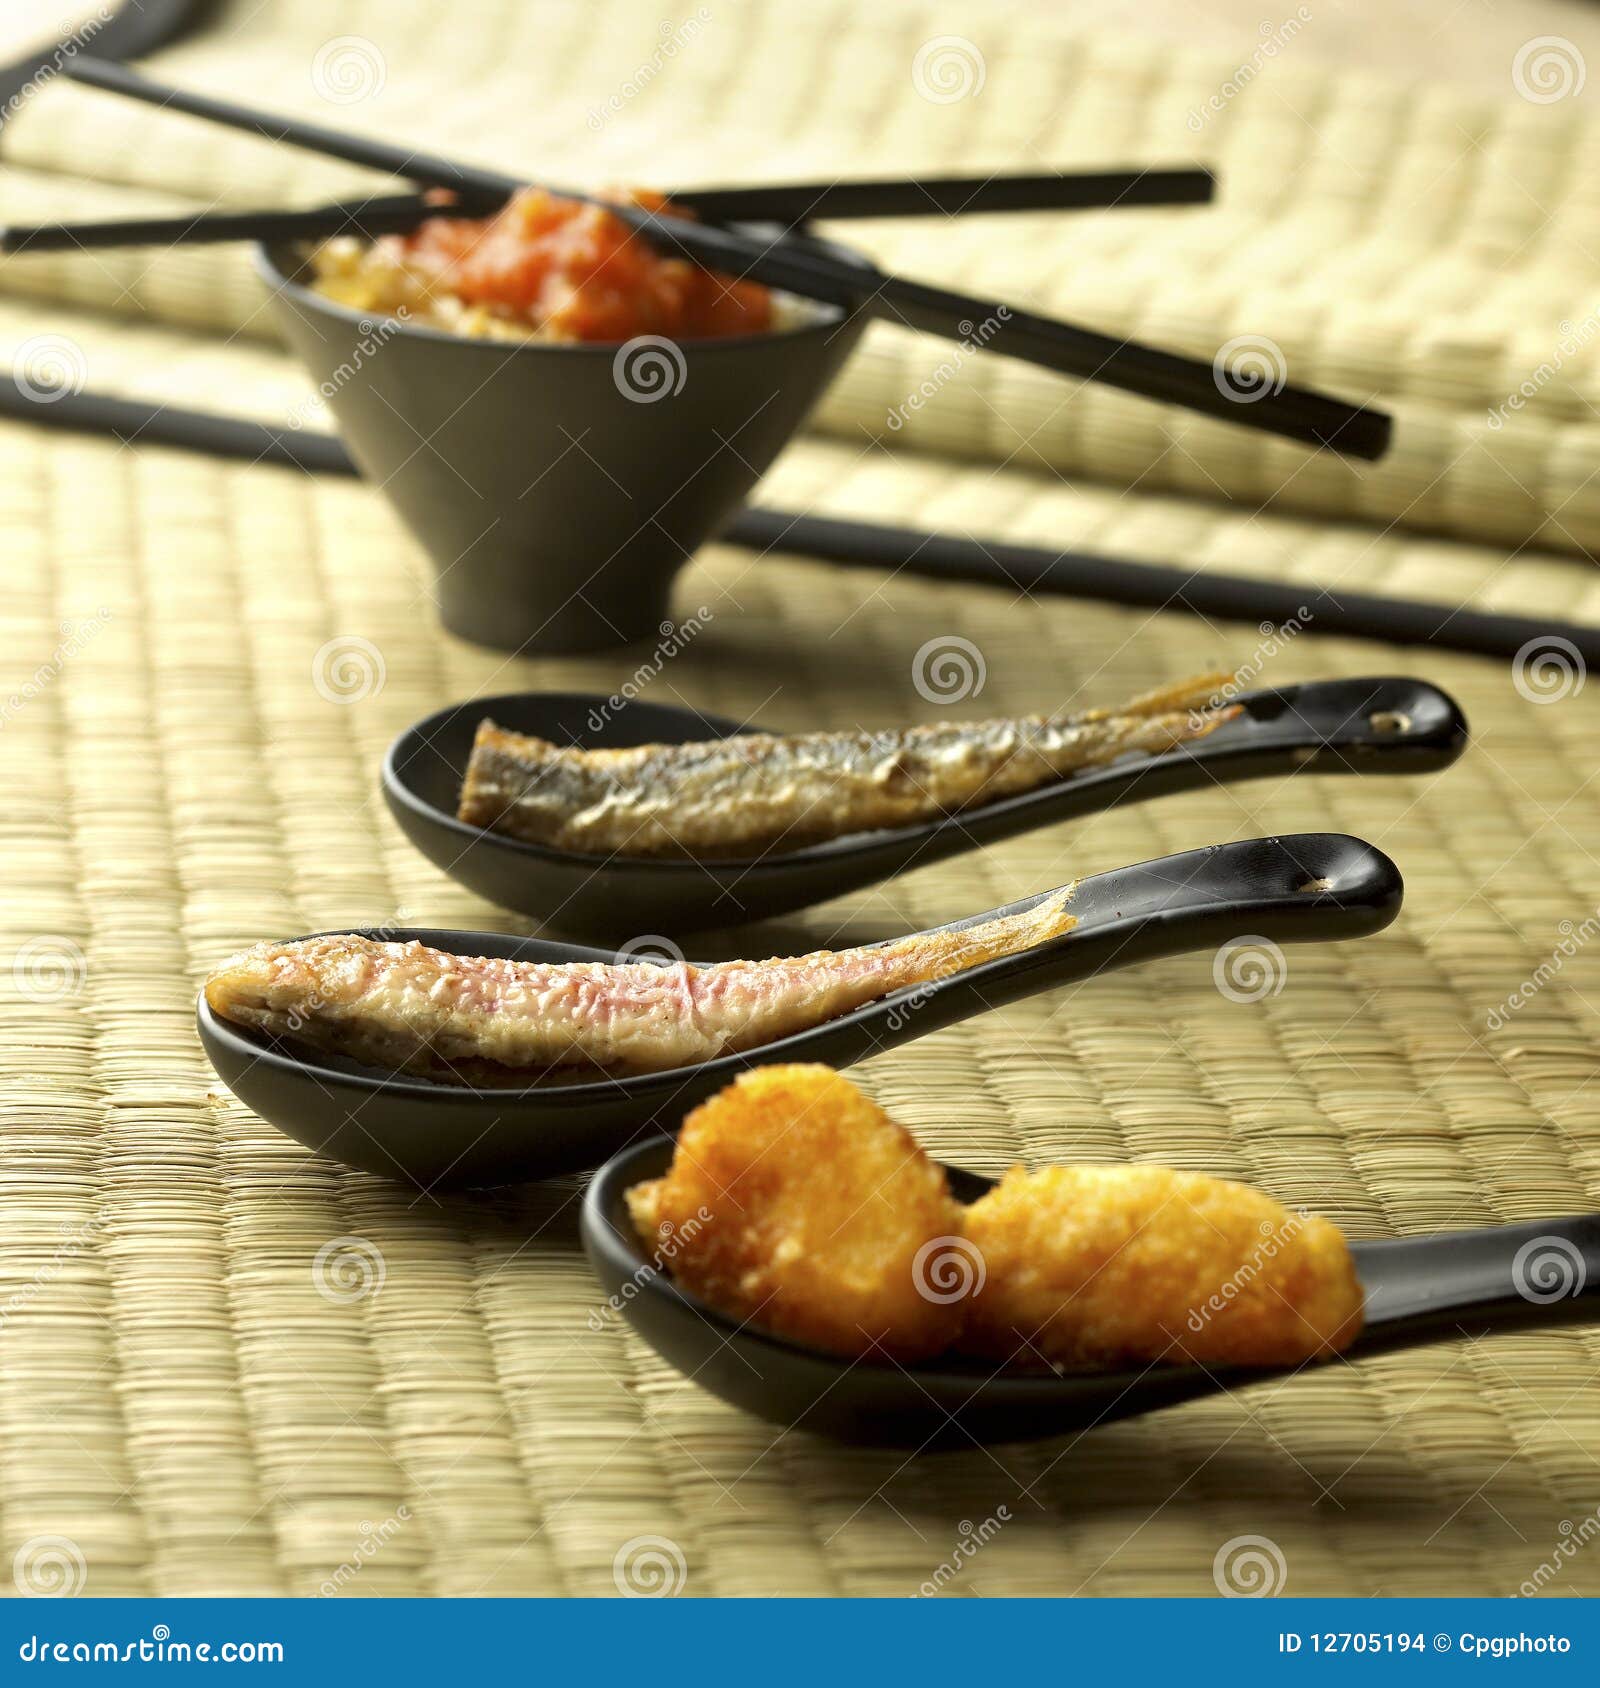 01 овощ зажаренный рыбами. сварено съешьте готовое еды представленное фотоснимком к